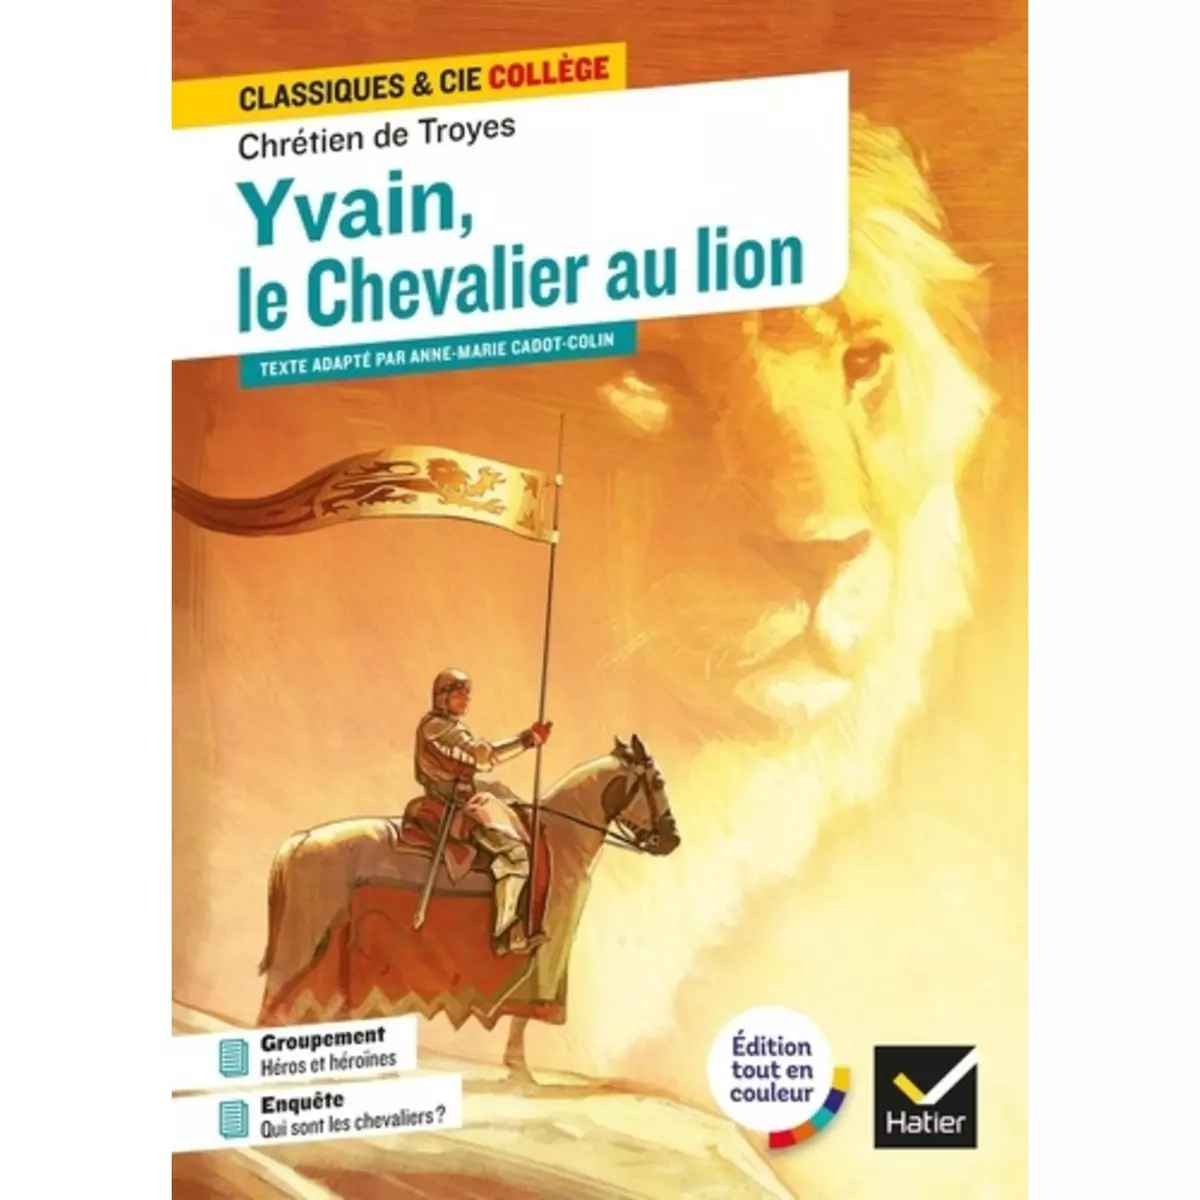  YVAIN, LE CHEVALIER AU LION, Troyes Chretien de